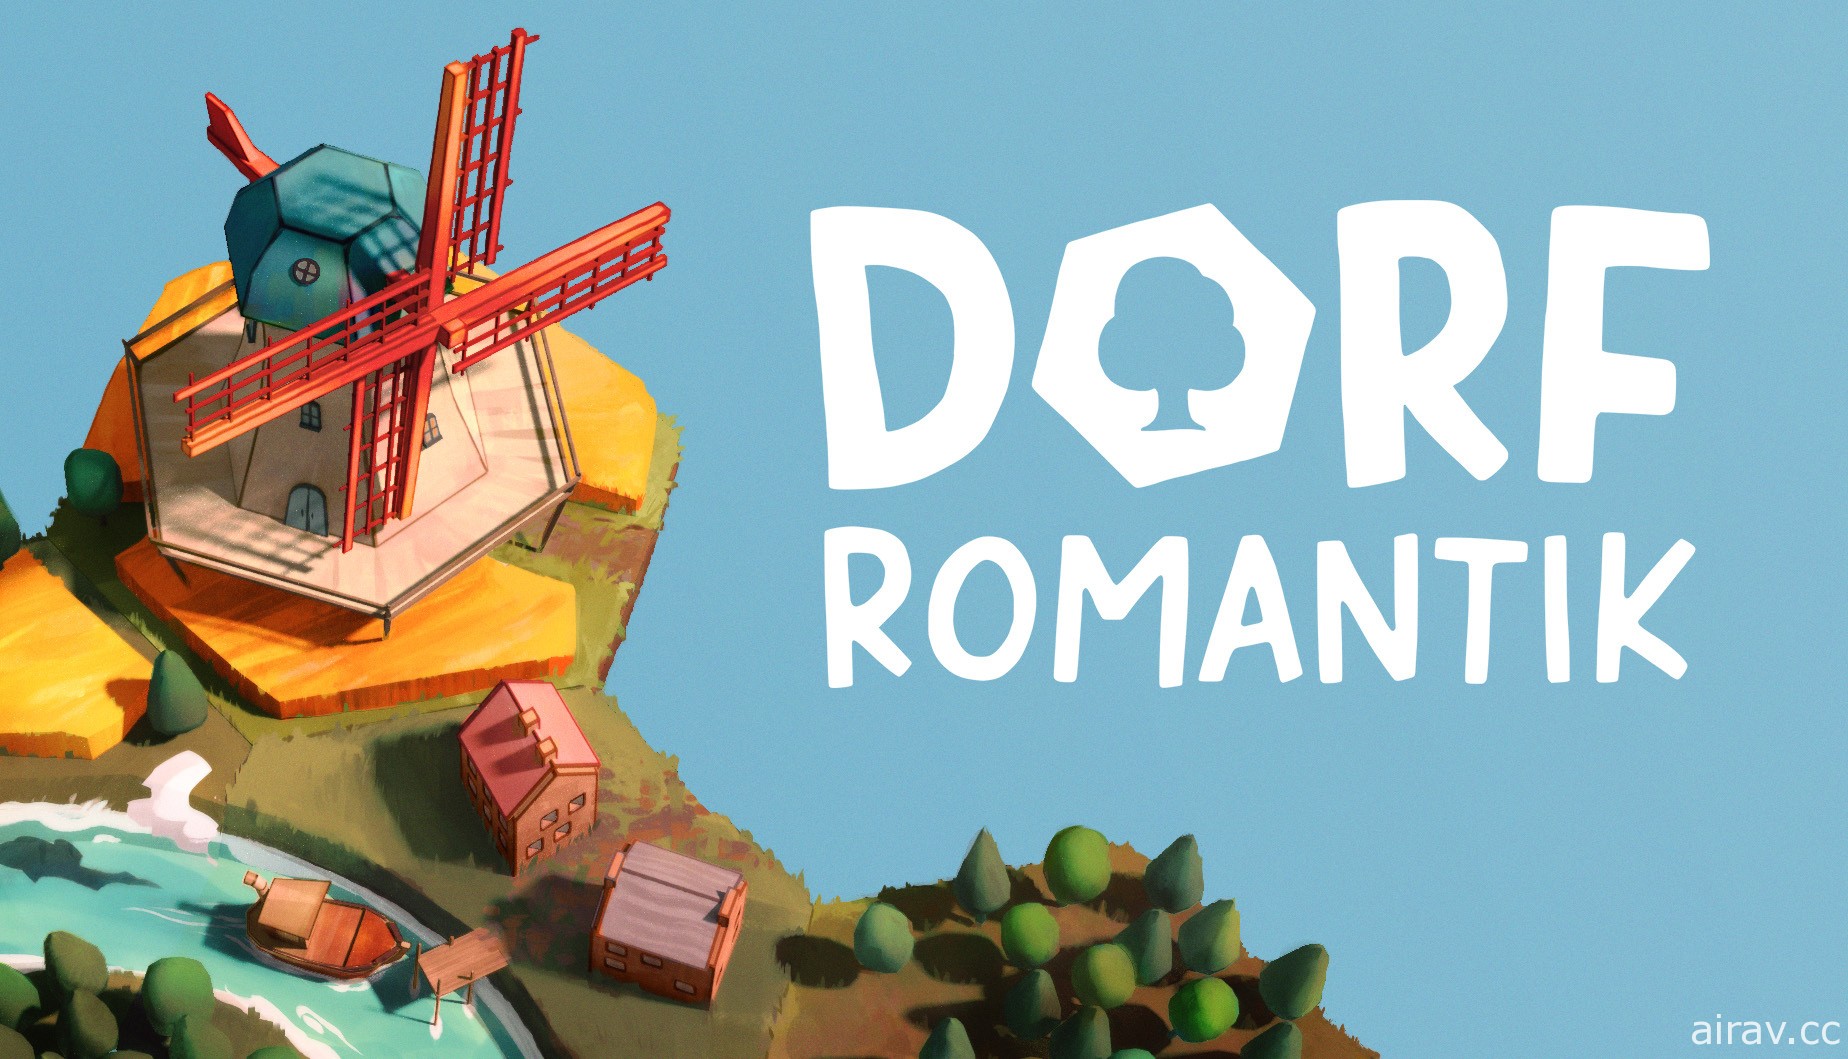 由柏林學生組成獨立團隊打造輕鬆策略益智新作《浪漫村落 Dorfromantik》展開搶先體驗